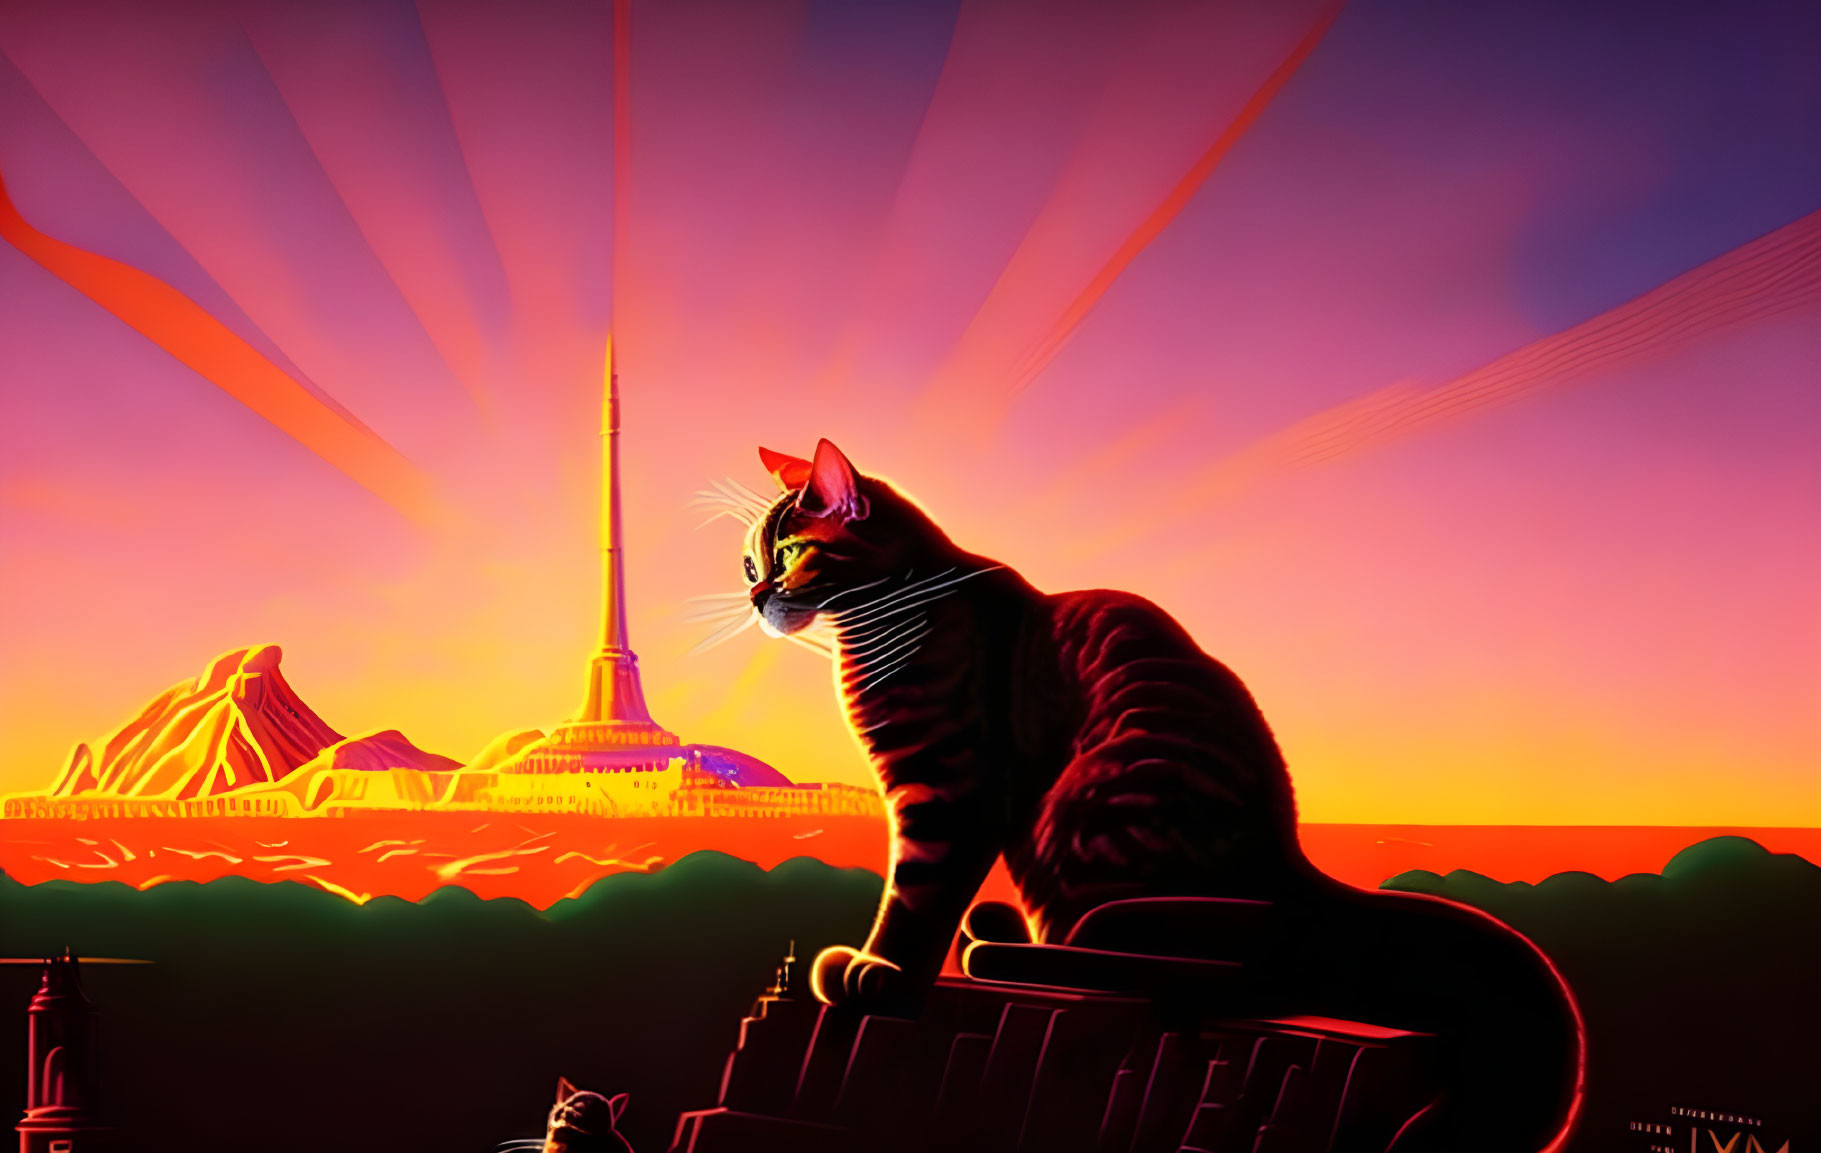 Stylized cat on ledge with retro-futuristic city skyline at sunset